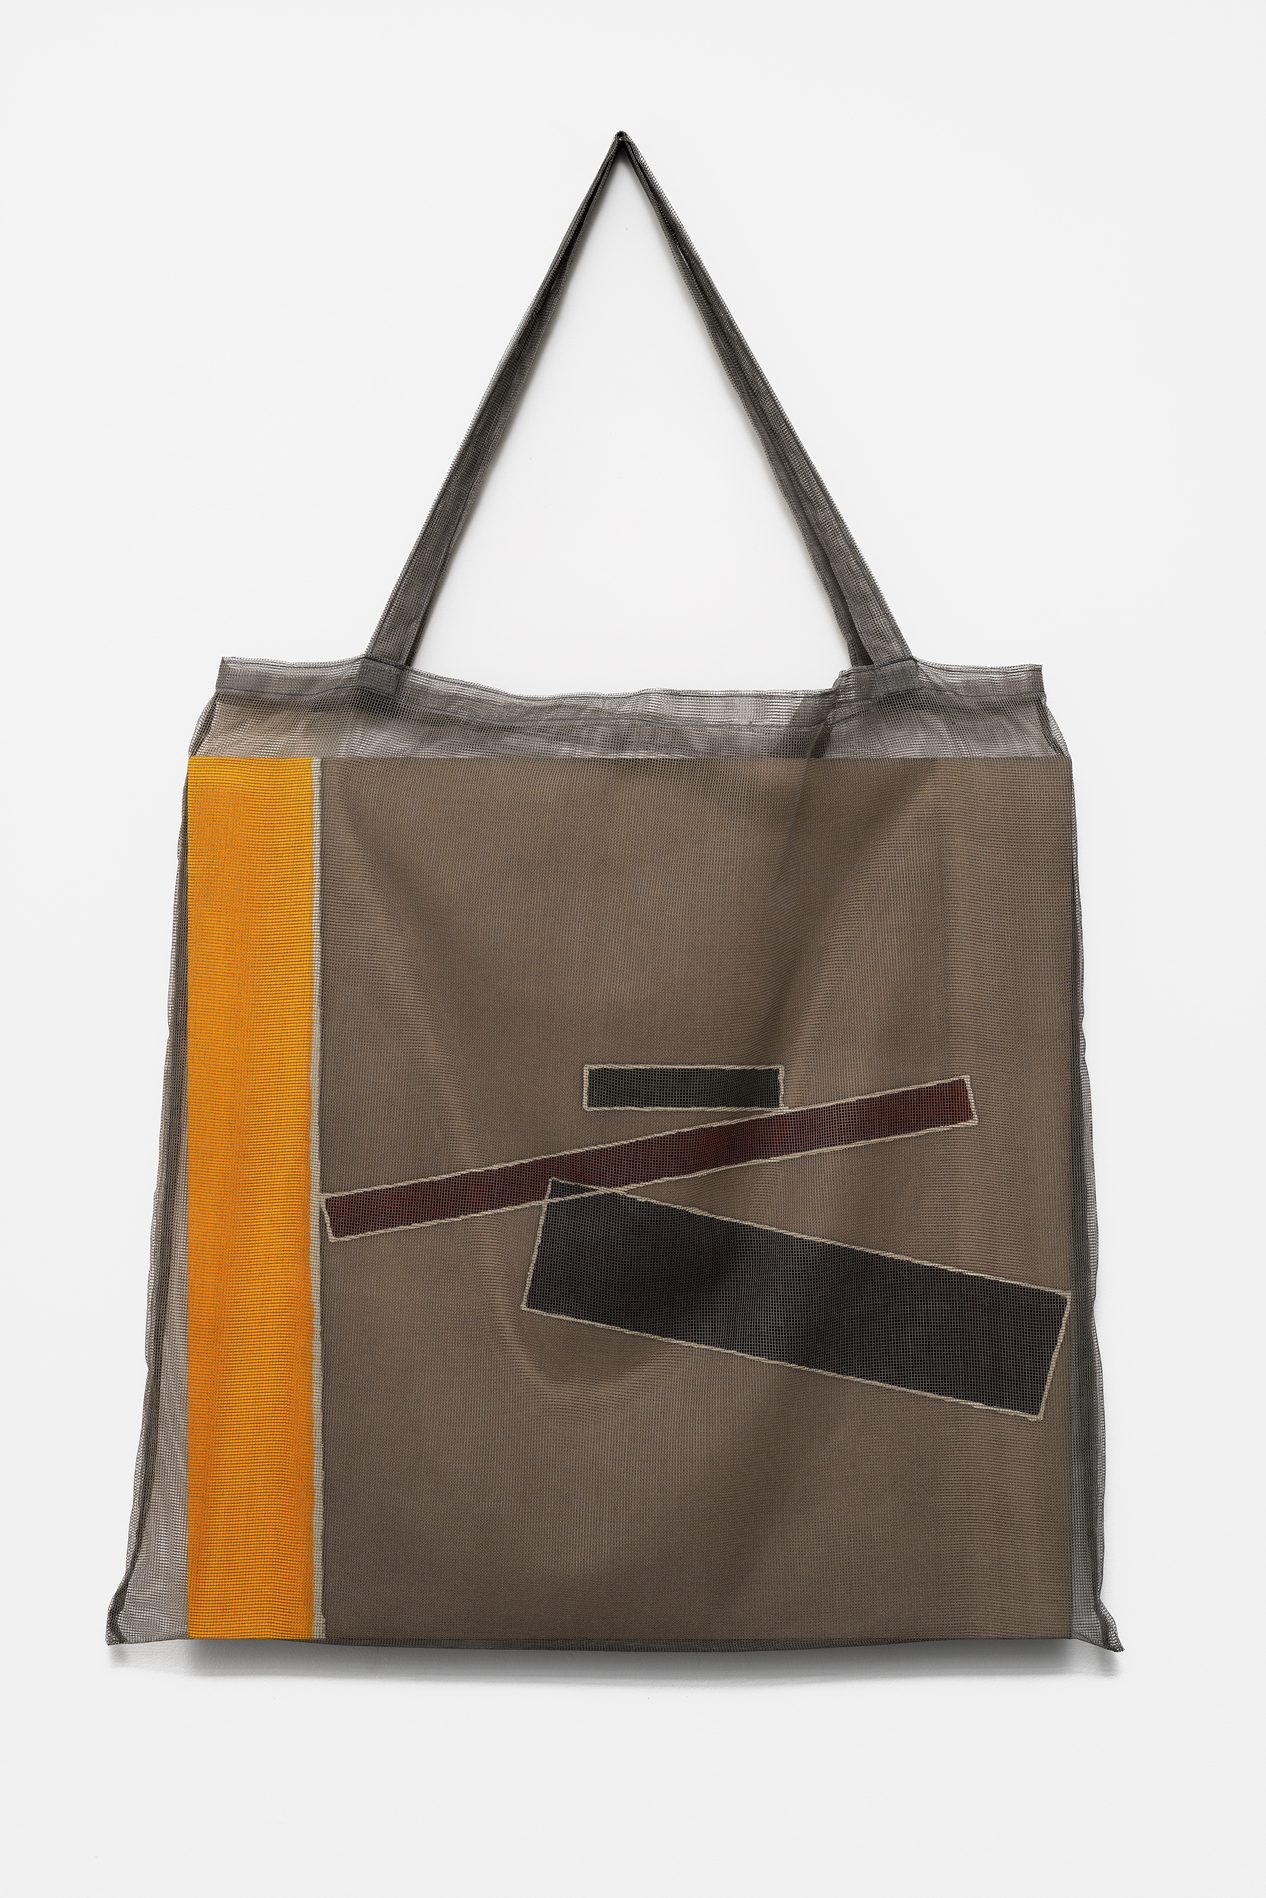 , 2019, Pigment on cotton(batik) and bag, 100 x 60 x 3 cm, , Photo: Aurélien Mole